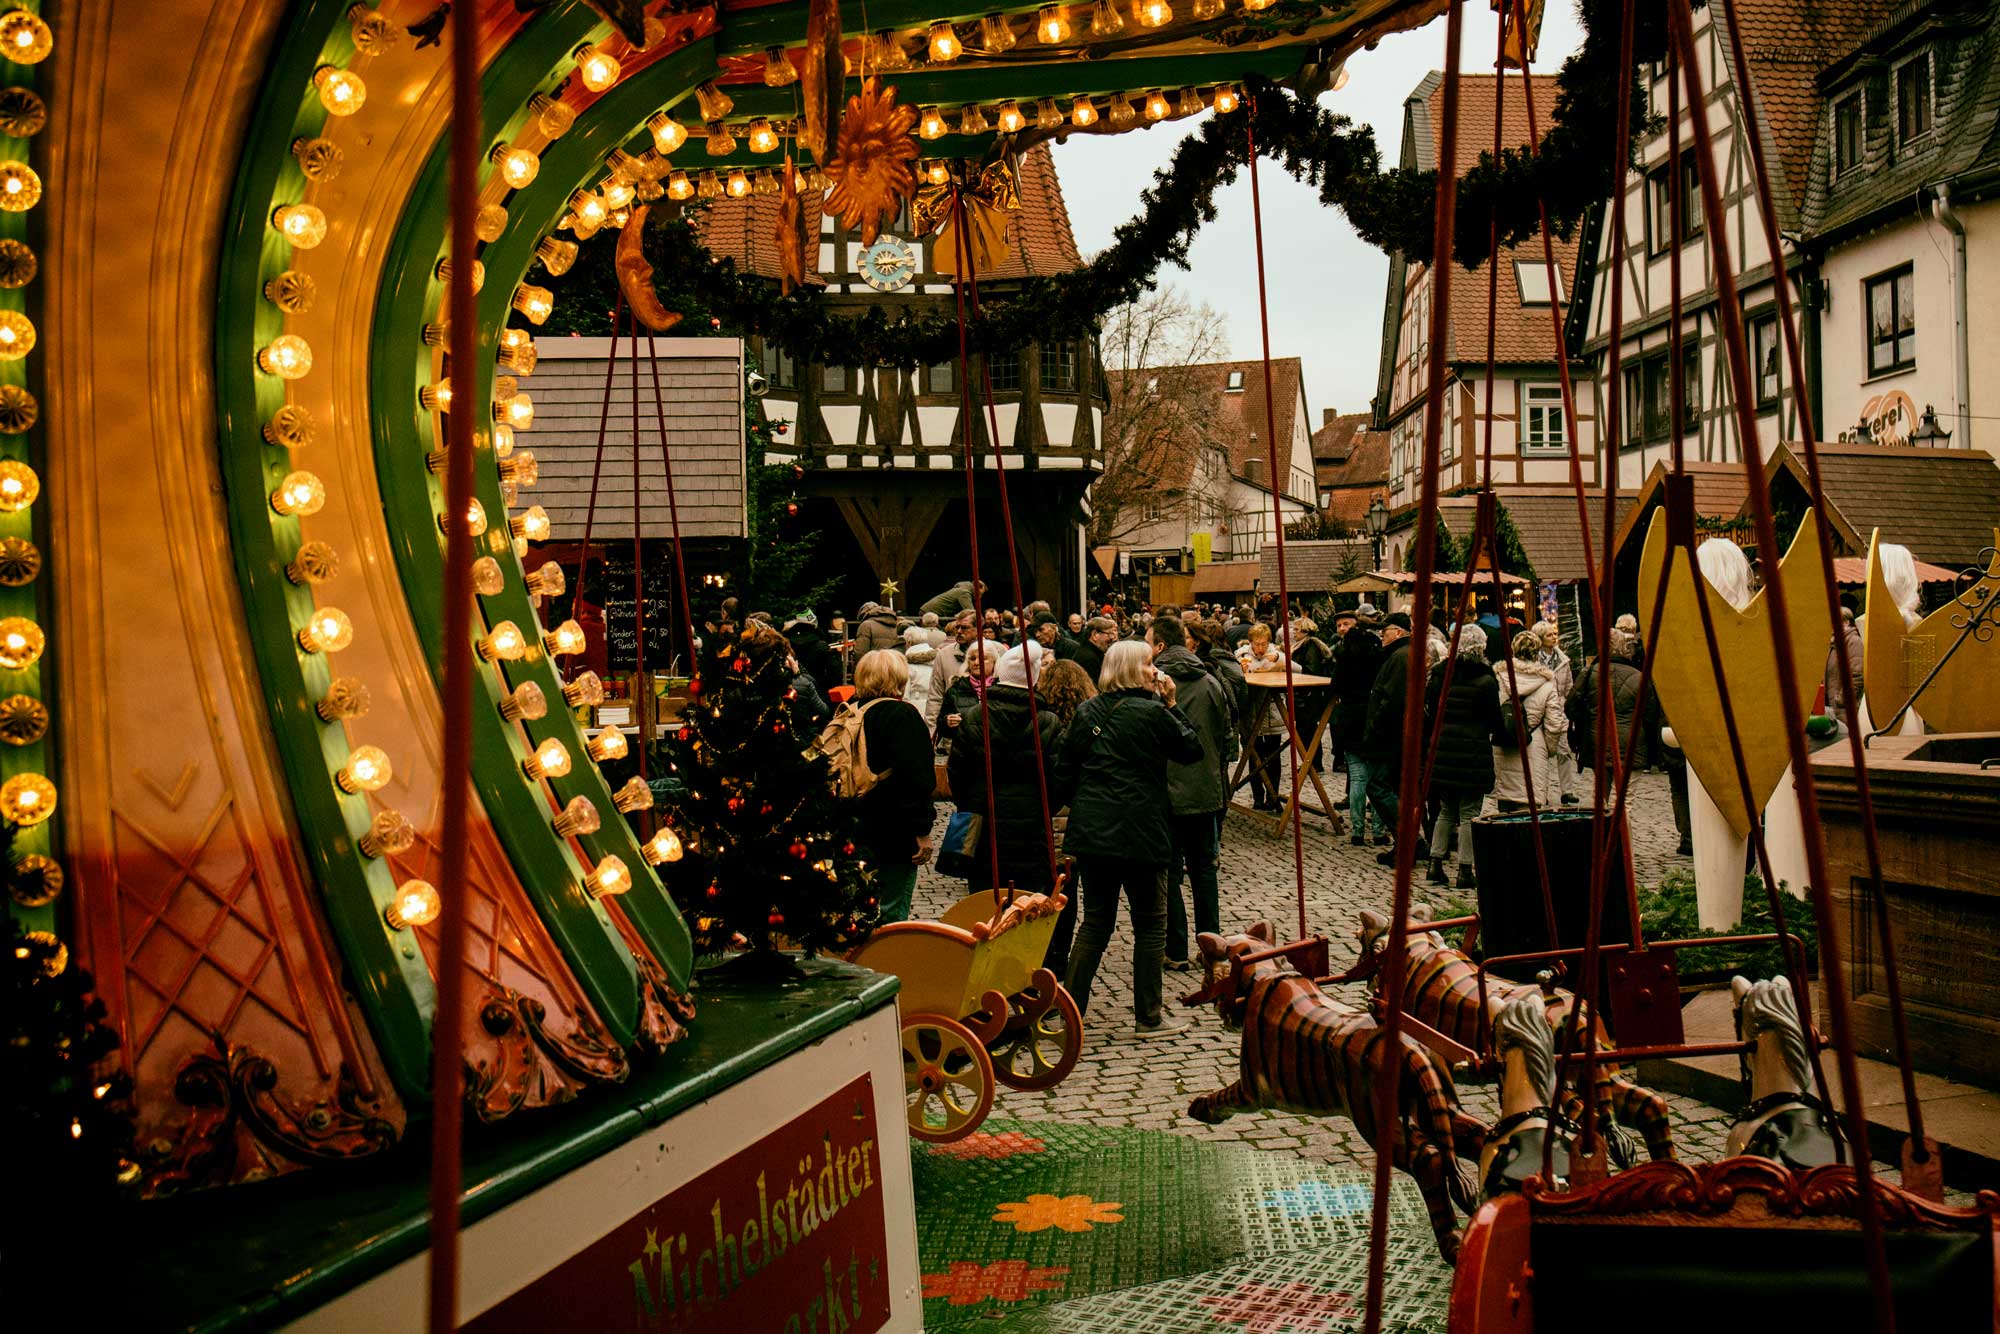 Weihnachtsmarkt in Michelstadt im Odenwald